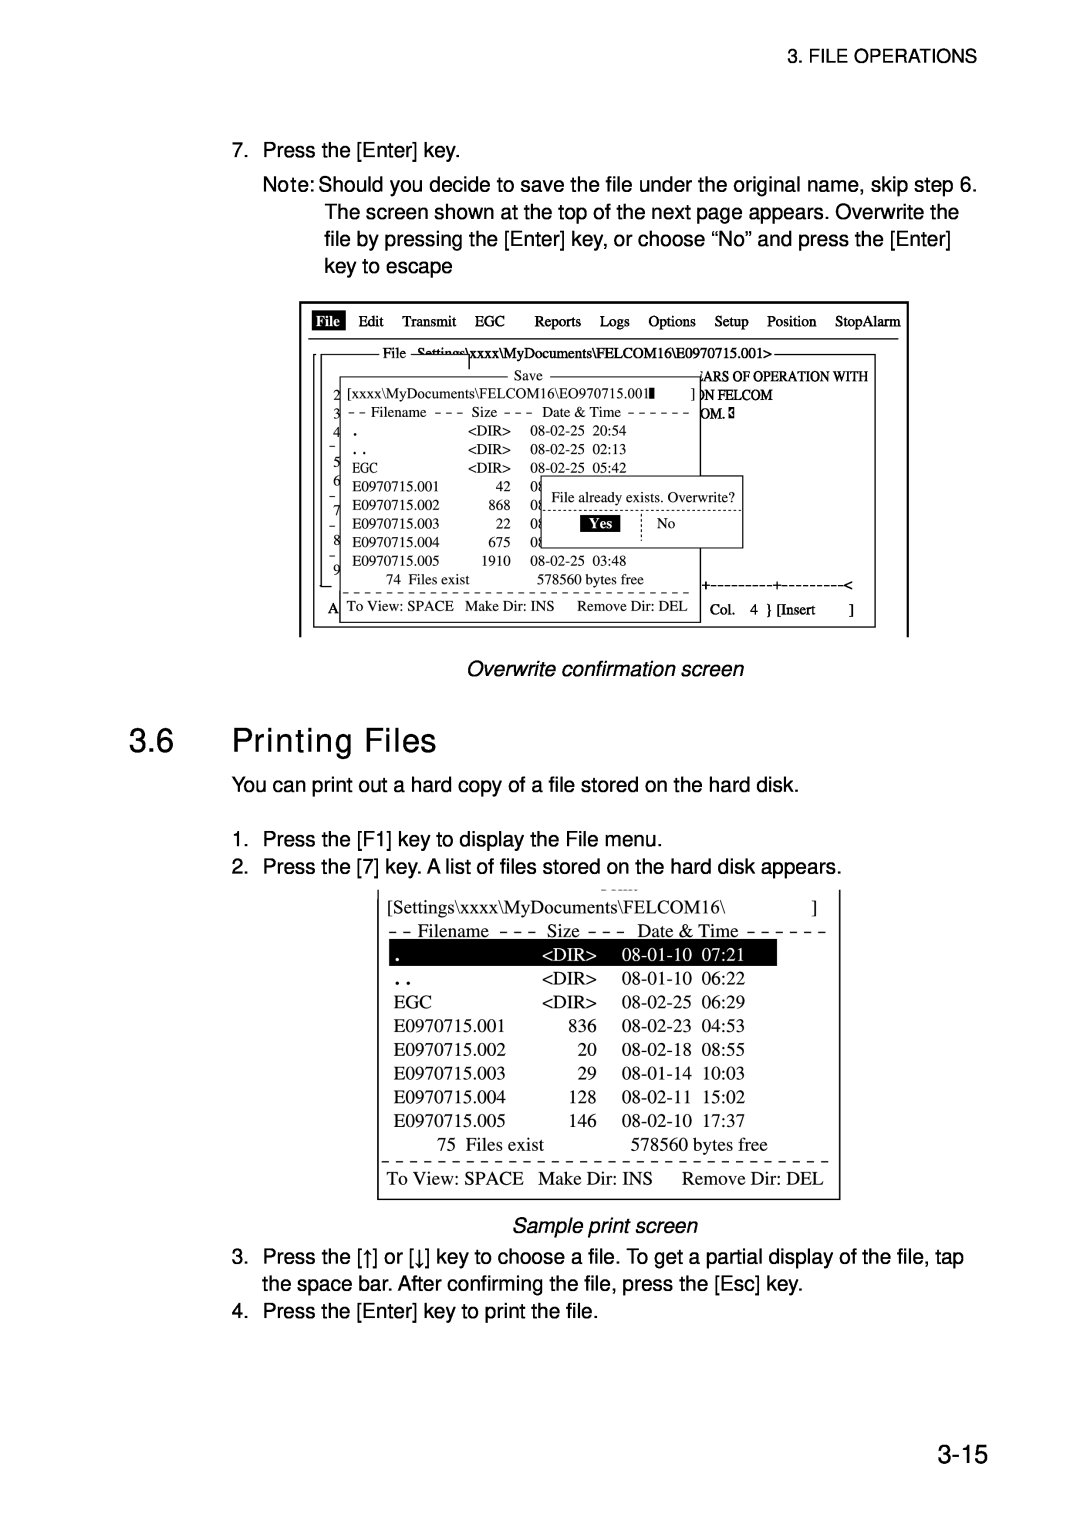 Furuno 16 manual Printing Files, 3-15, Overwrite confirmation screen, Sample print screen 